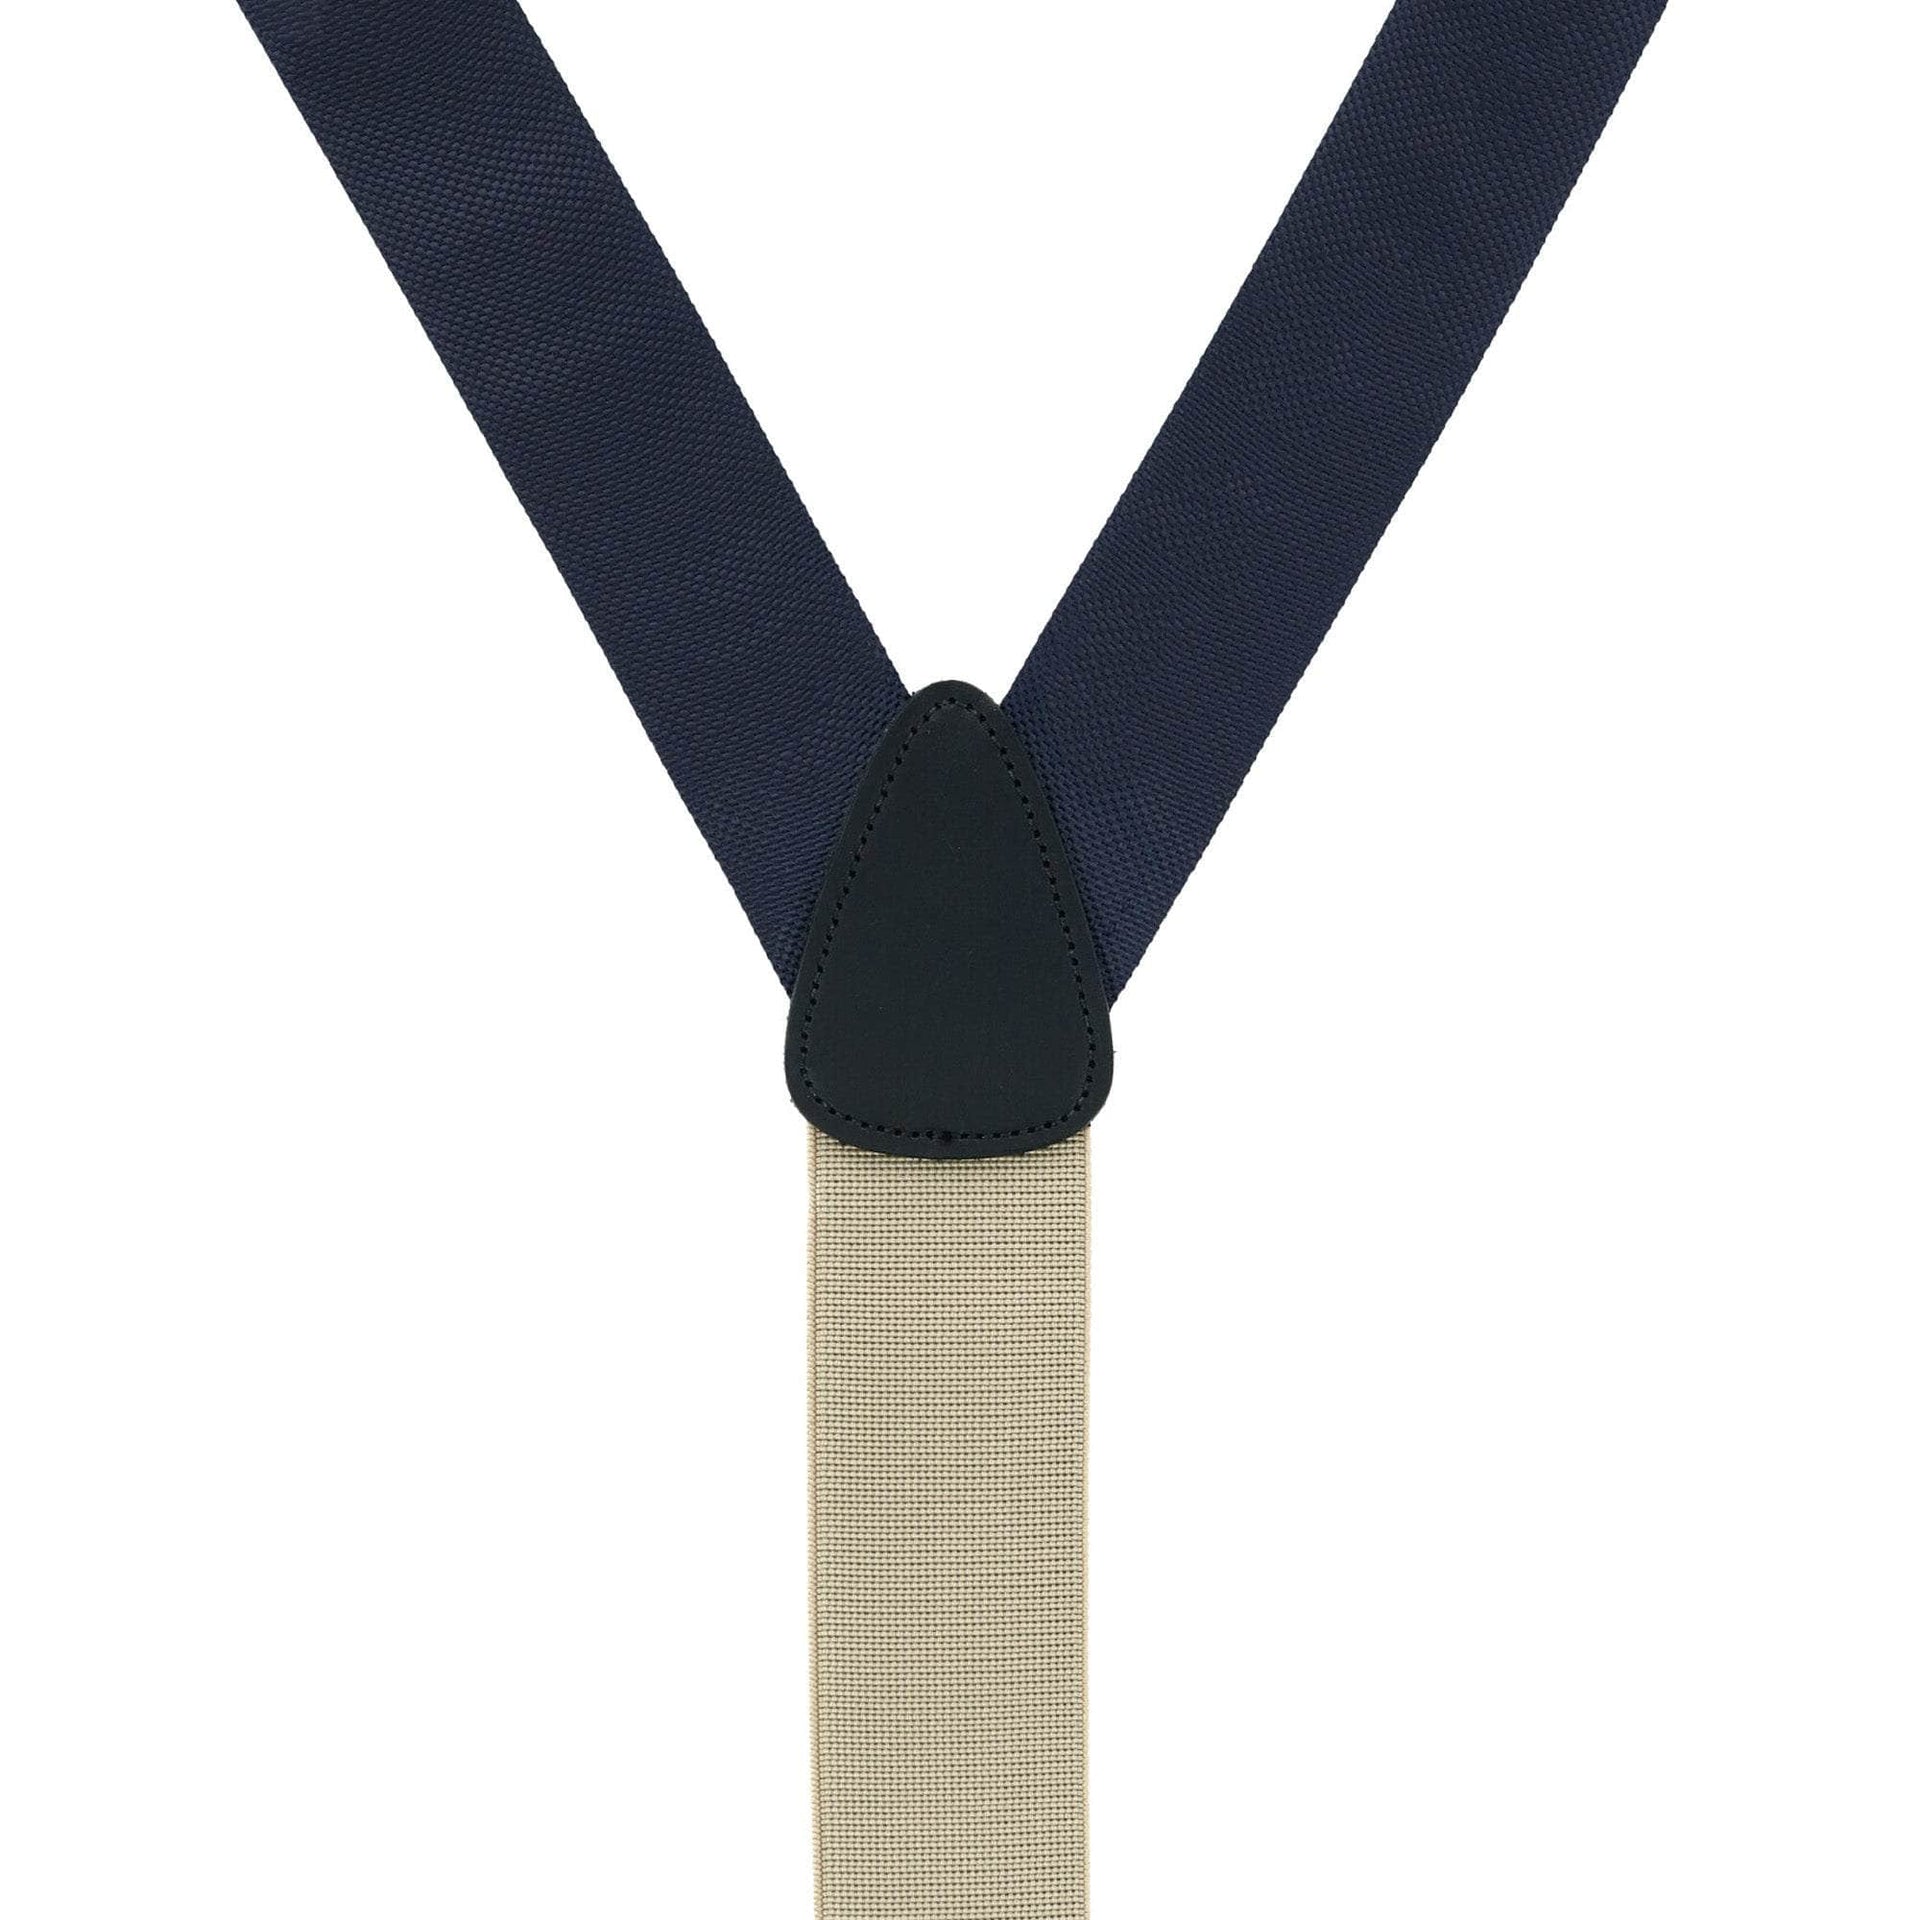 Trafalgar Kington Formal Suspenders, $88, Nordstrom